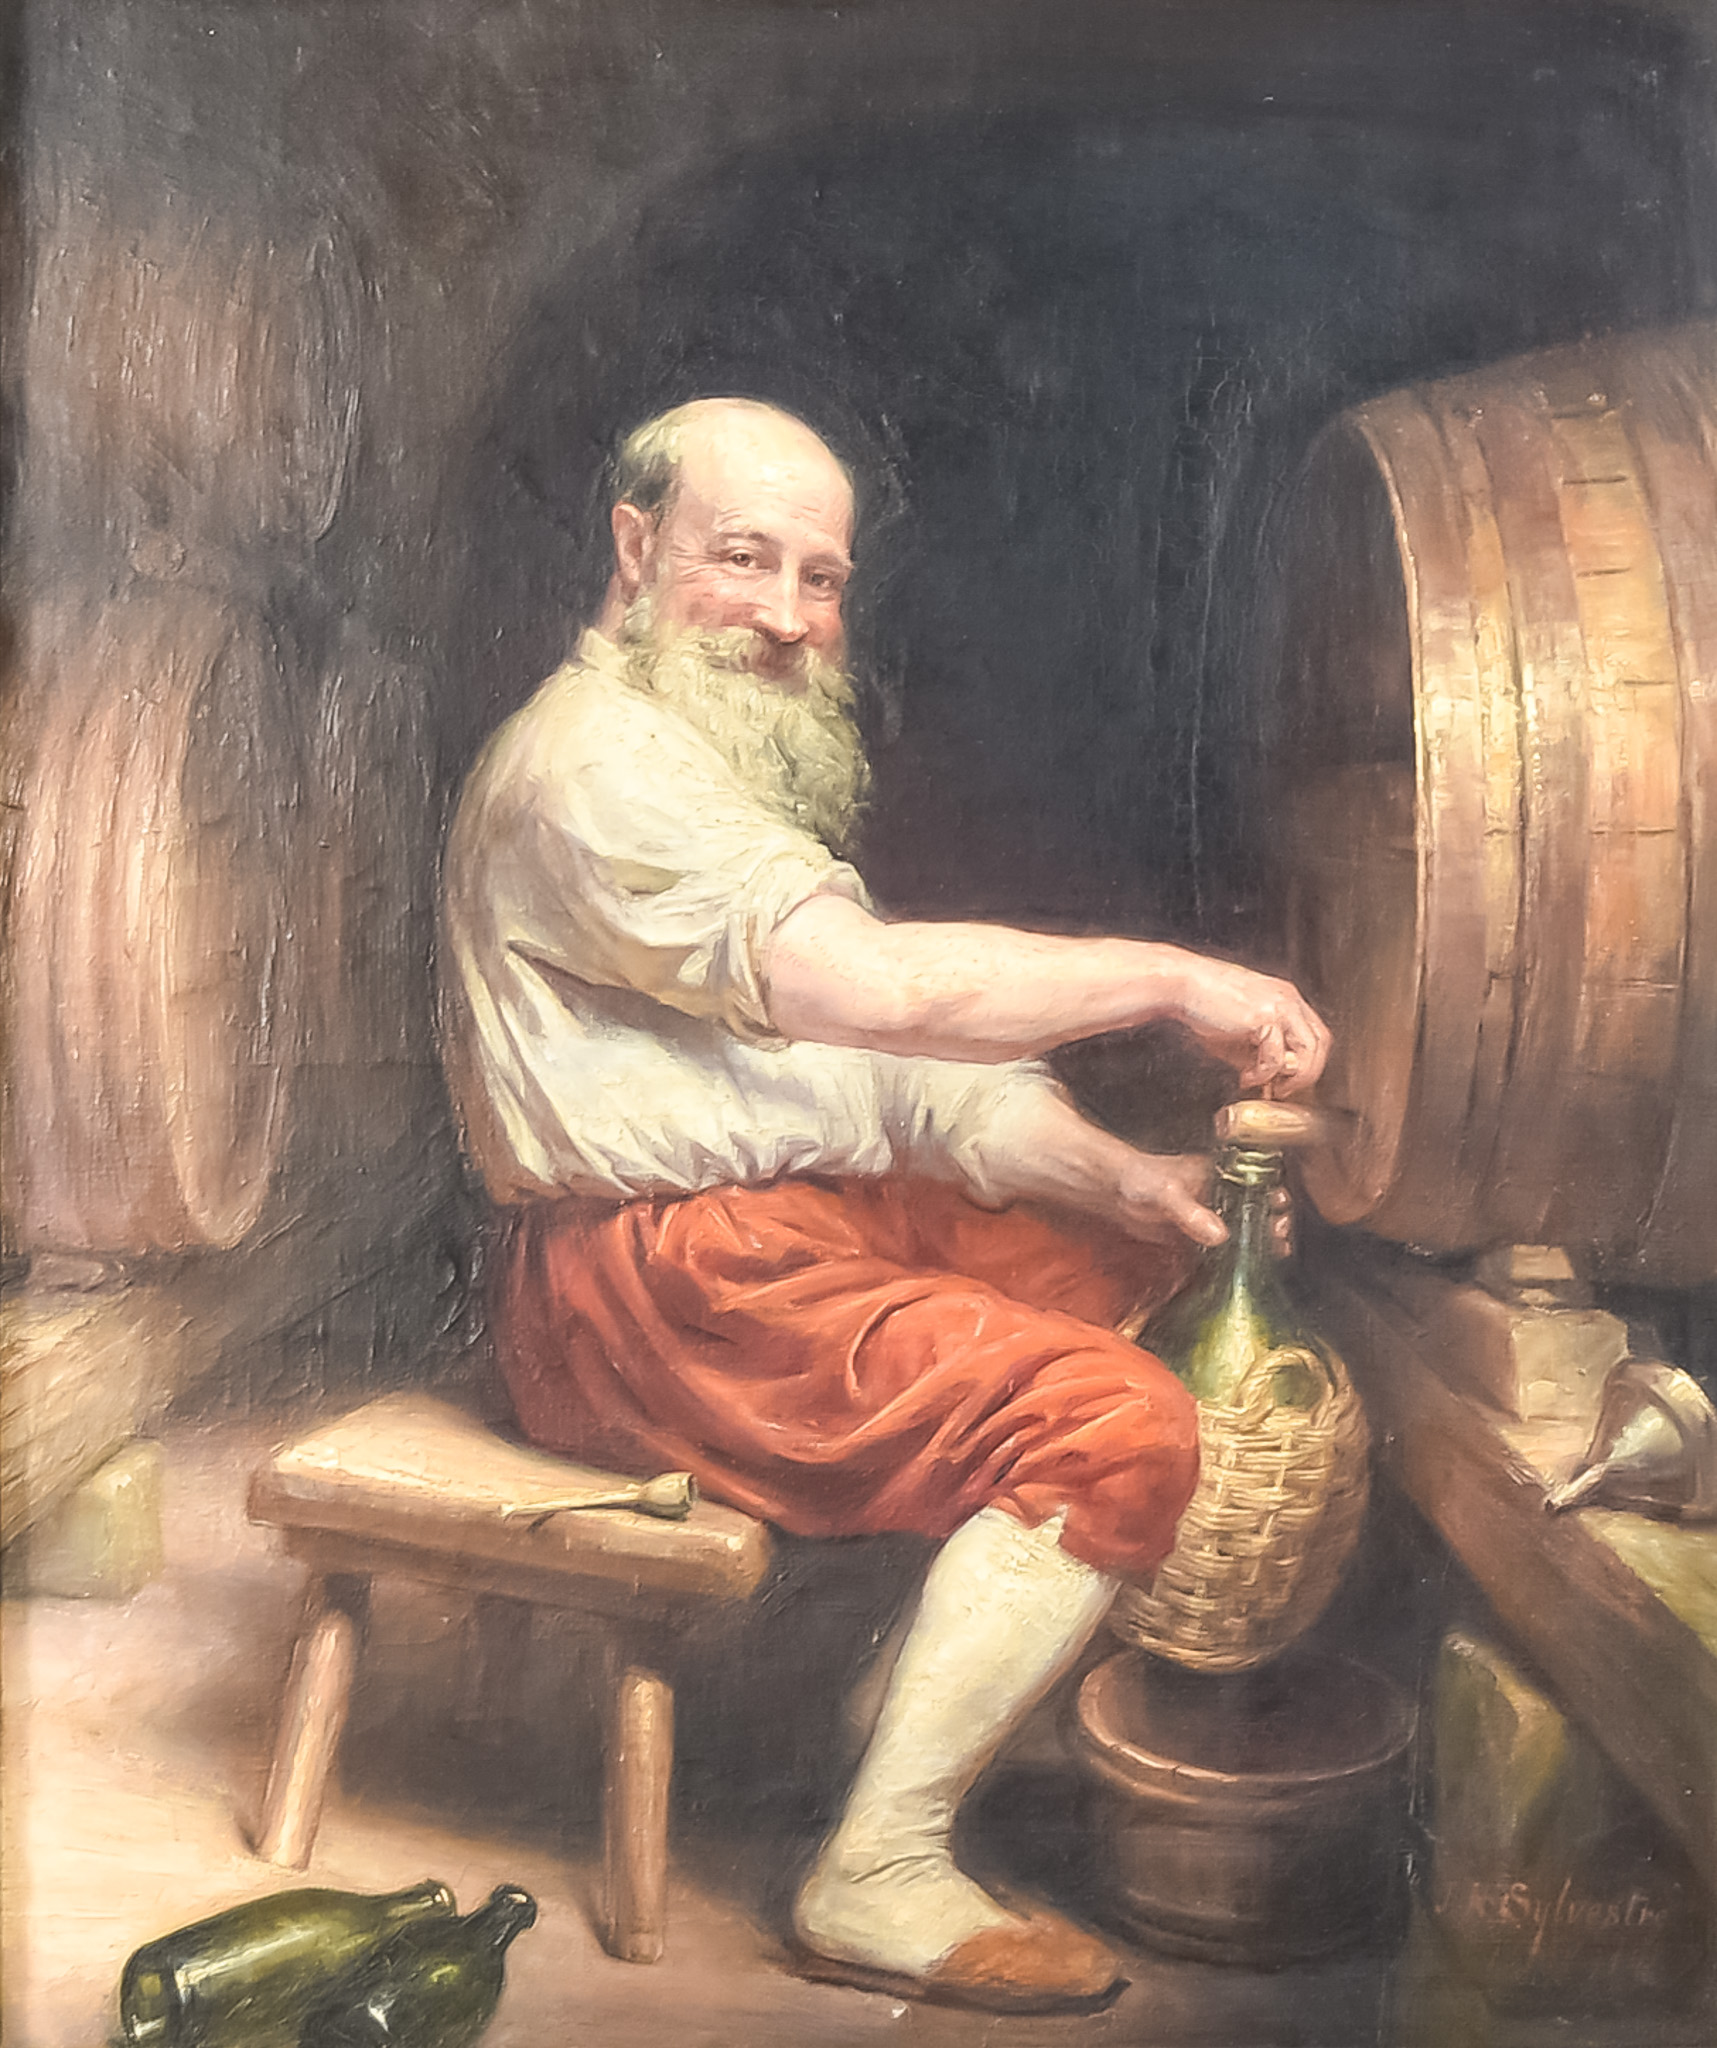 Joseph Noel Sylvester (1847-1926) - Oil painting - Full-length portrait of a seated bearded man